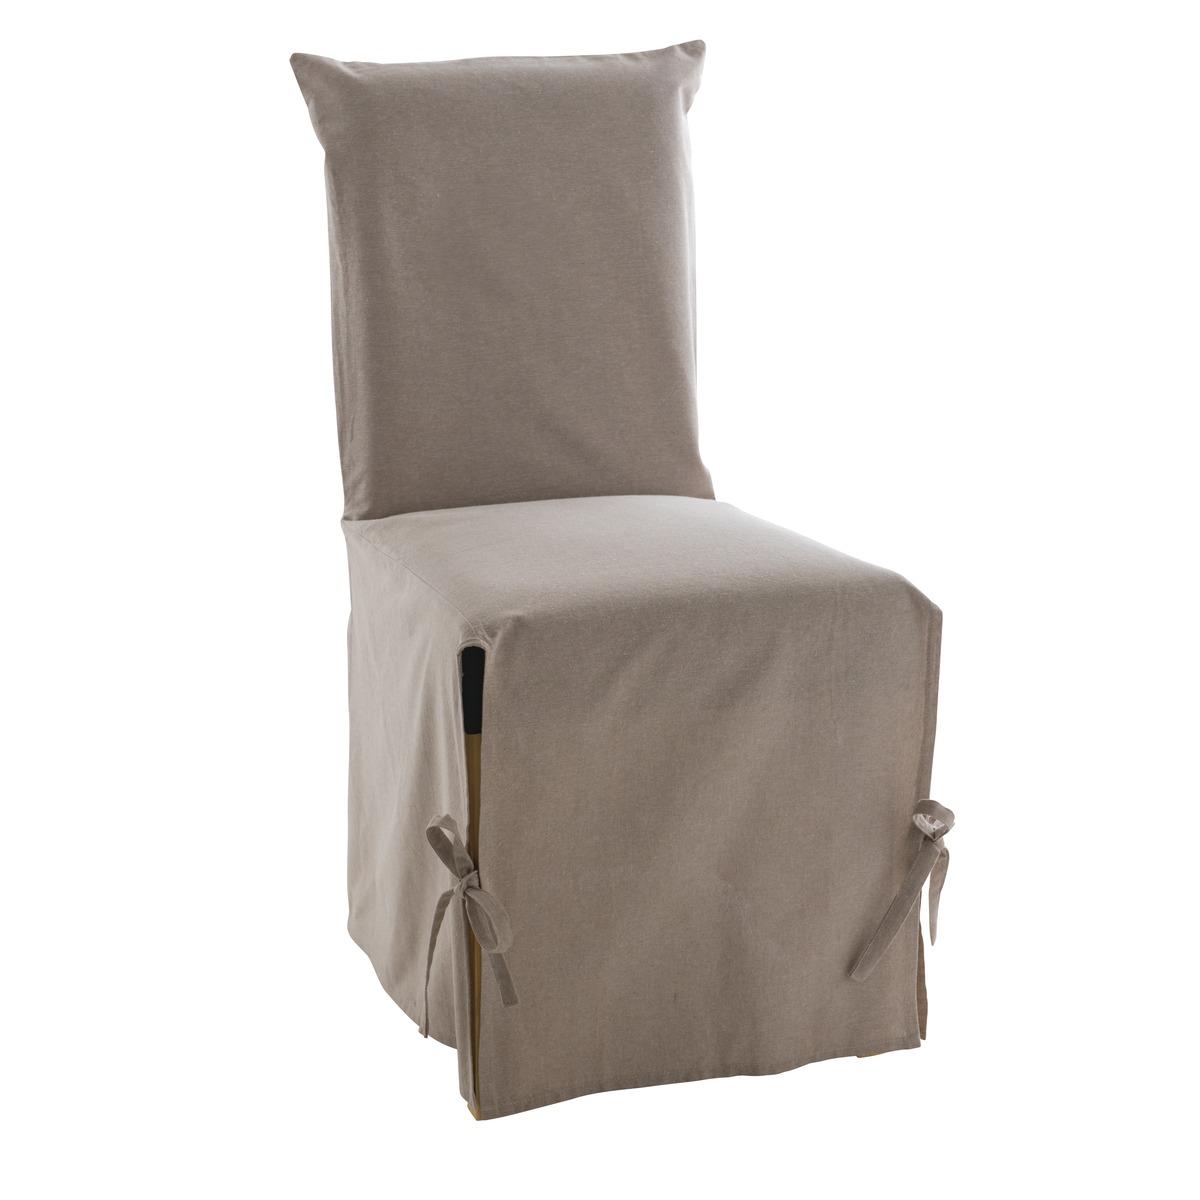 Housse de chaise à rabat effet lin - 45 x 50 cm - Beige